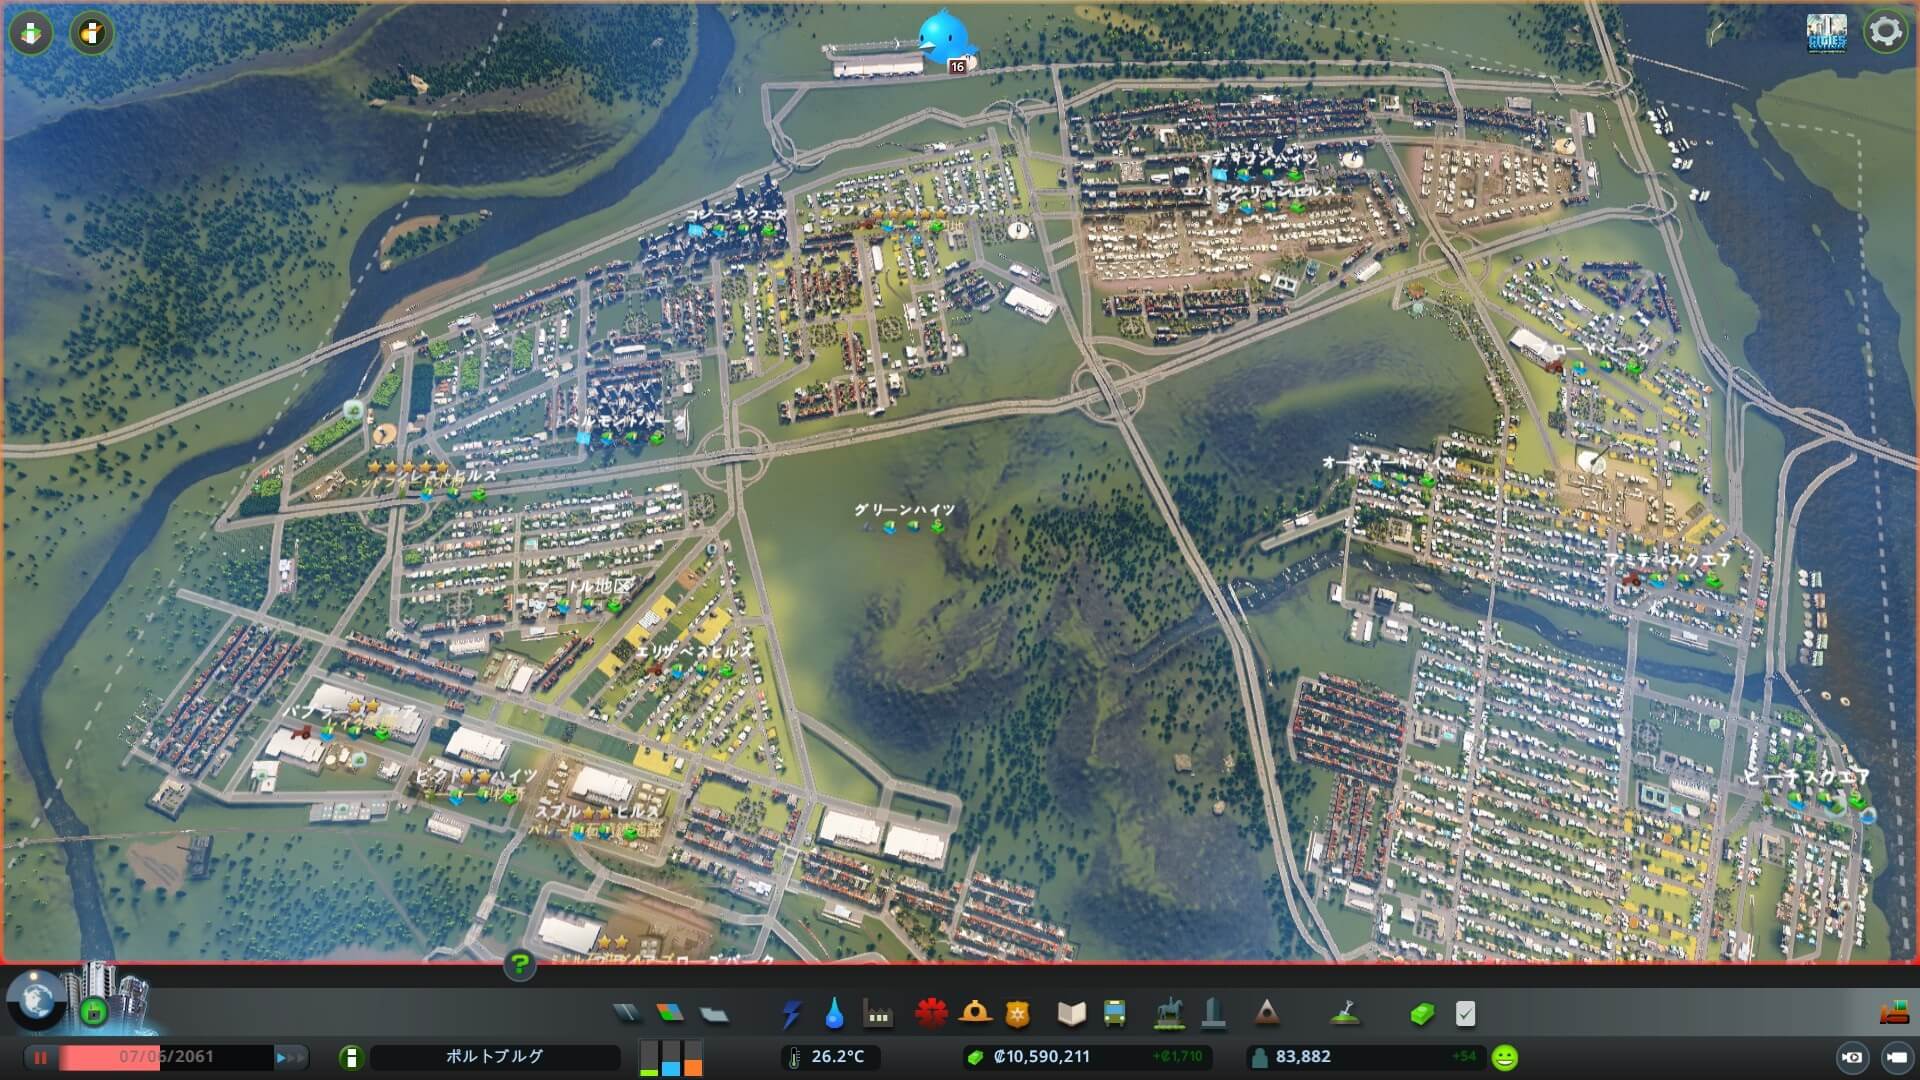 Cities Skylines 攻略ブログ 渋滞させないための高速道路の接続方法 Game Play360